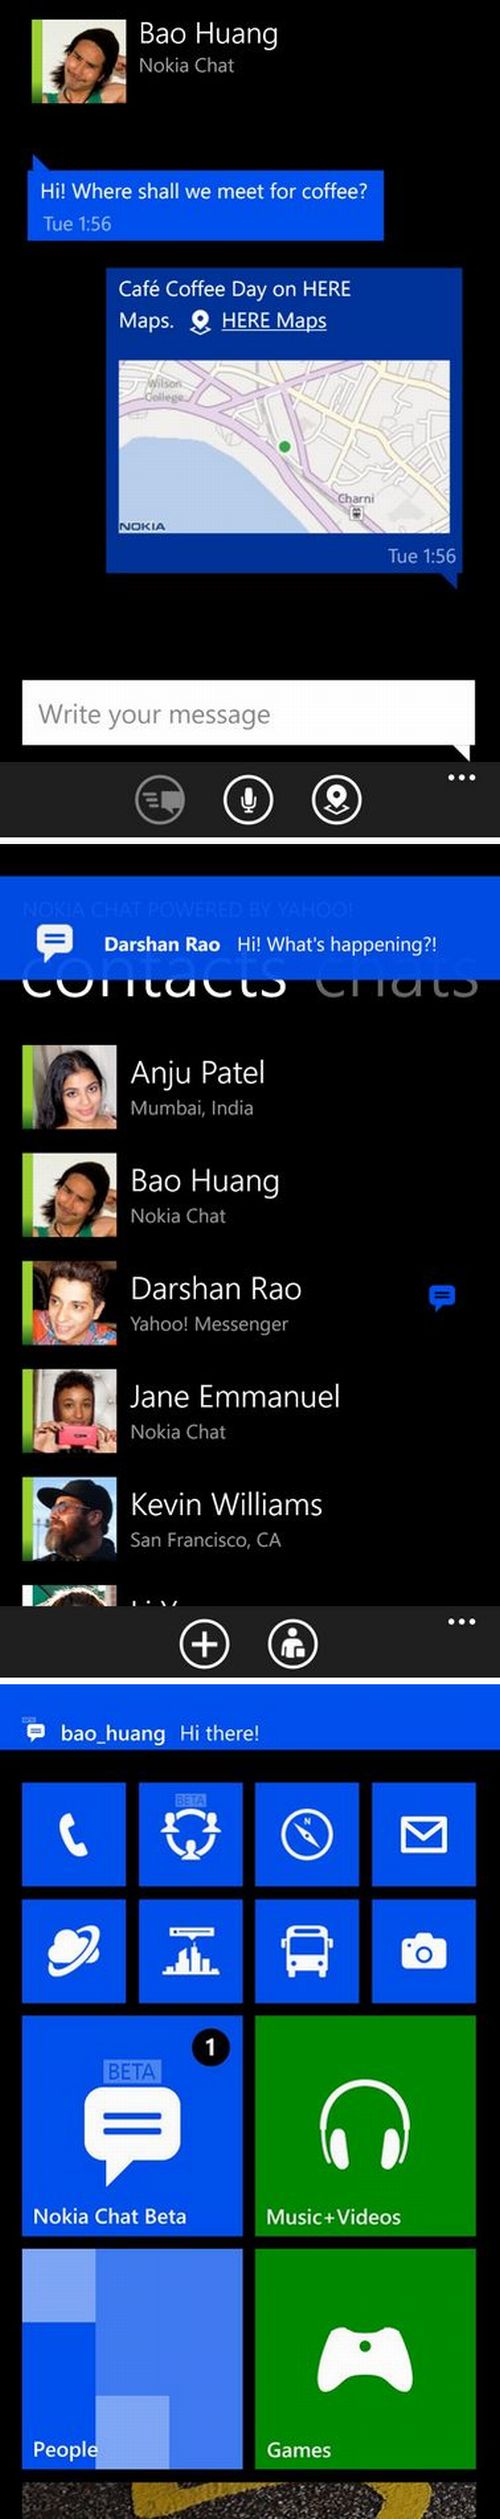 Nokia Chat beta: cset minden nokiásnak